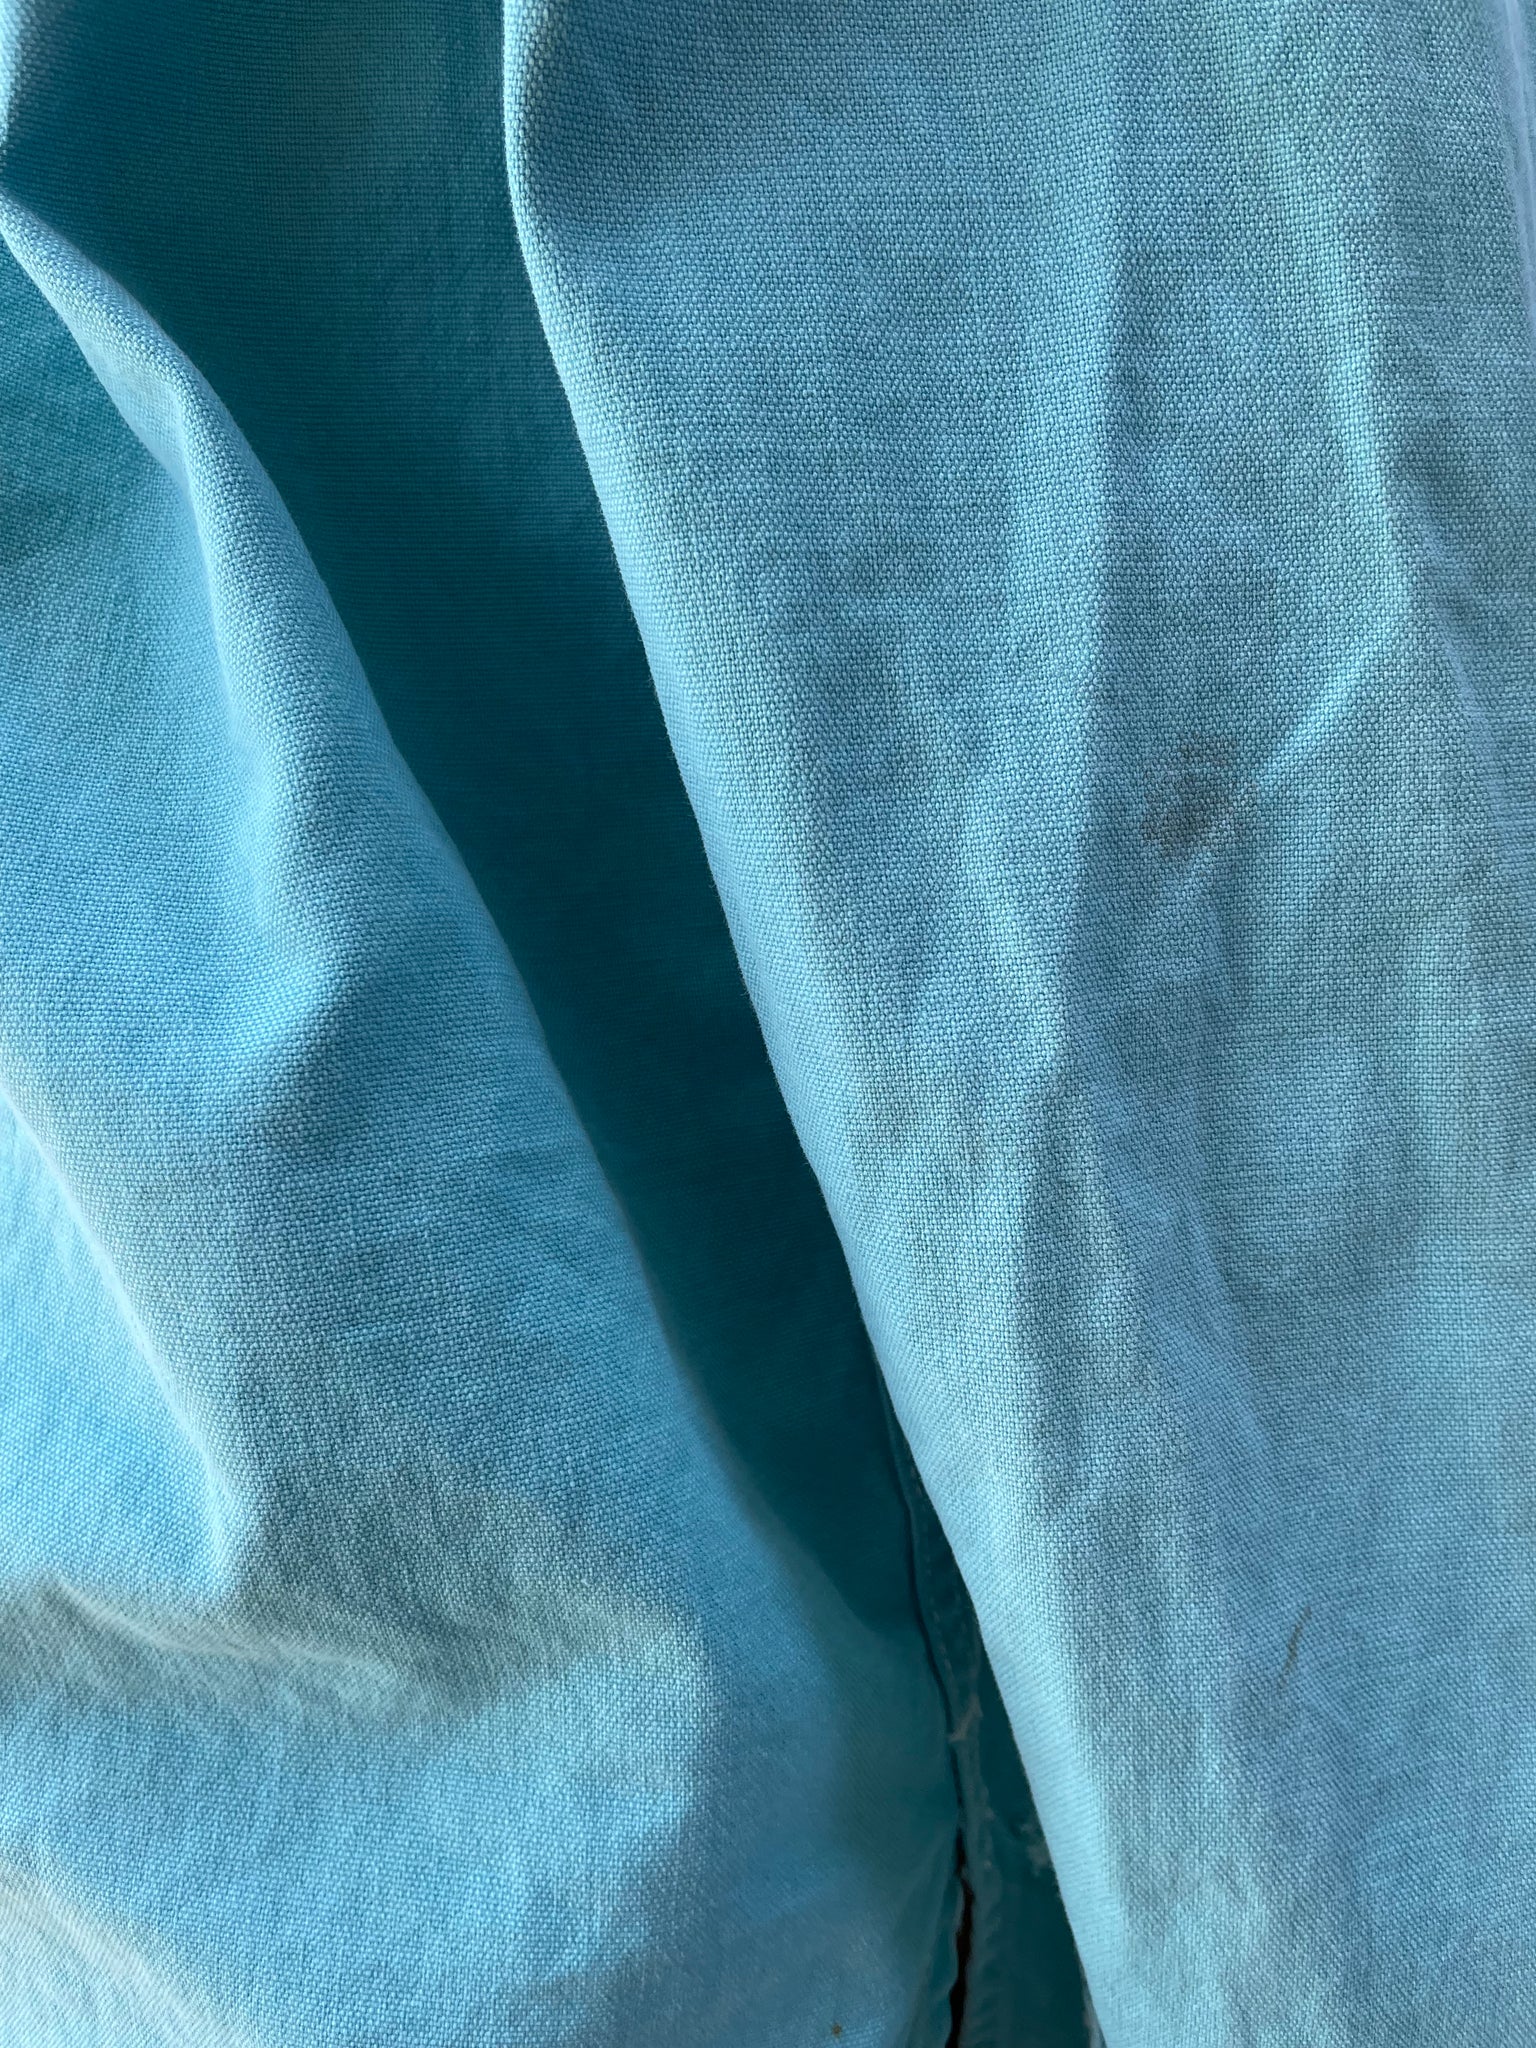 1950s Women's Cornflower Blue 'White Stag' Cotton Sportswear Jacket